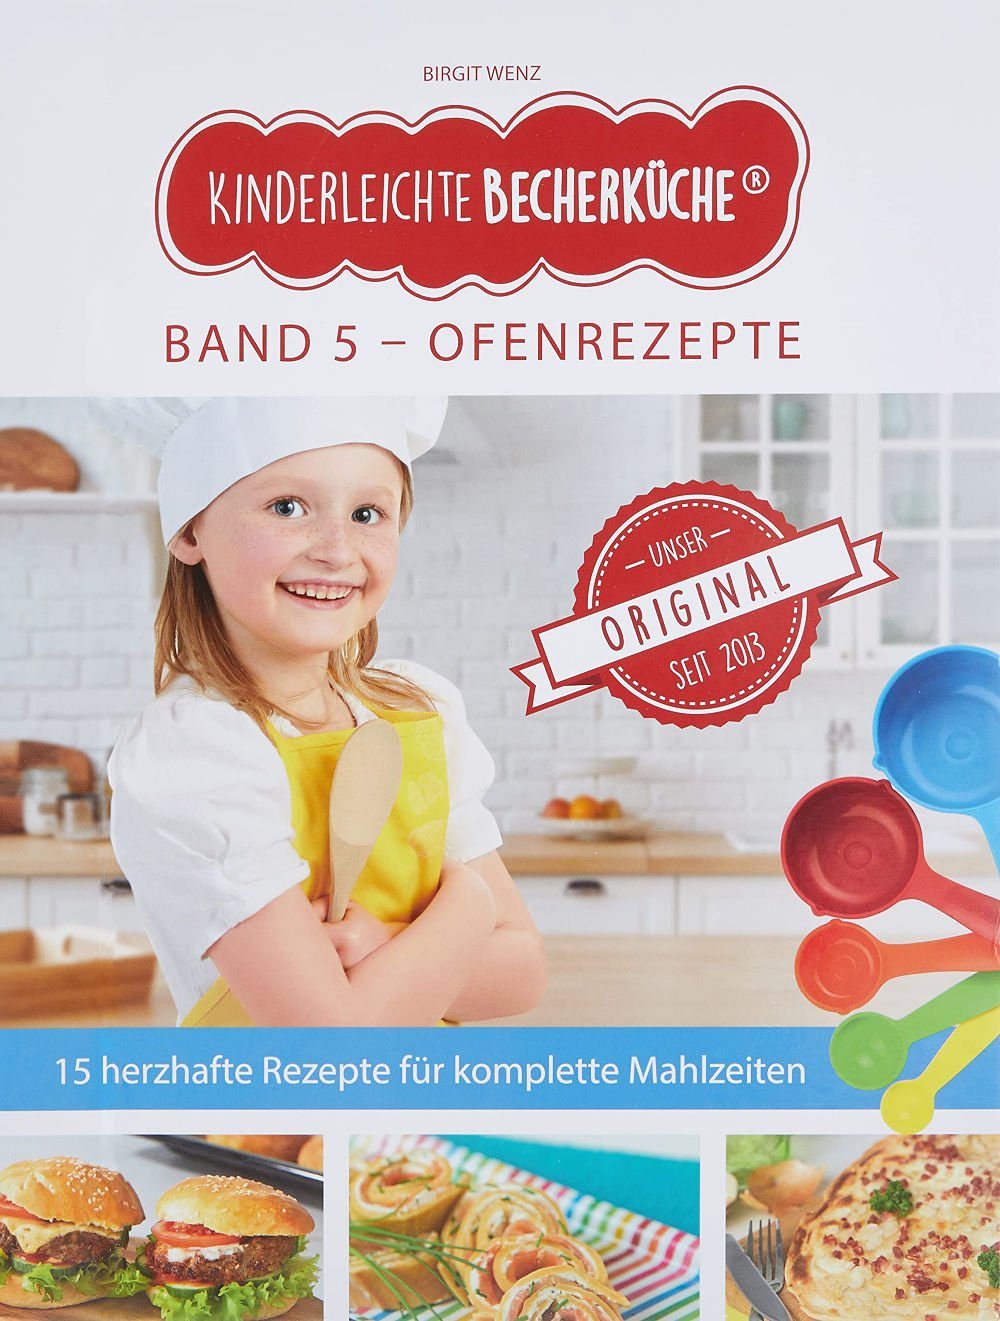 Becherküche 5 Ofengerichte die BAND ganze Familie ERGÄNZUNGSEXEMPLAR, Rezepte für Kinderleichte Notizbuch